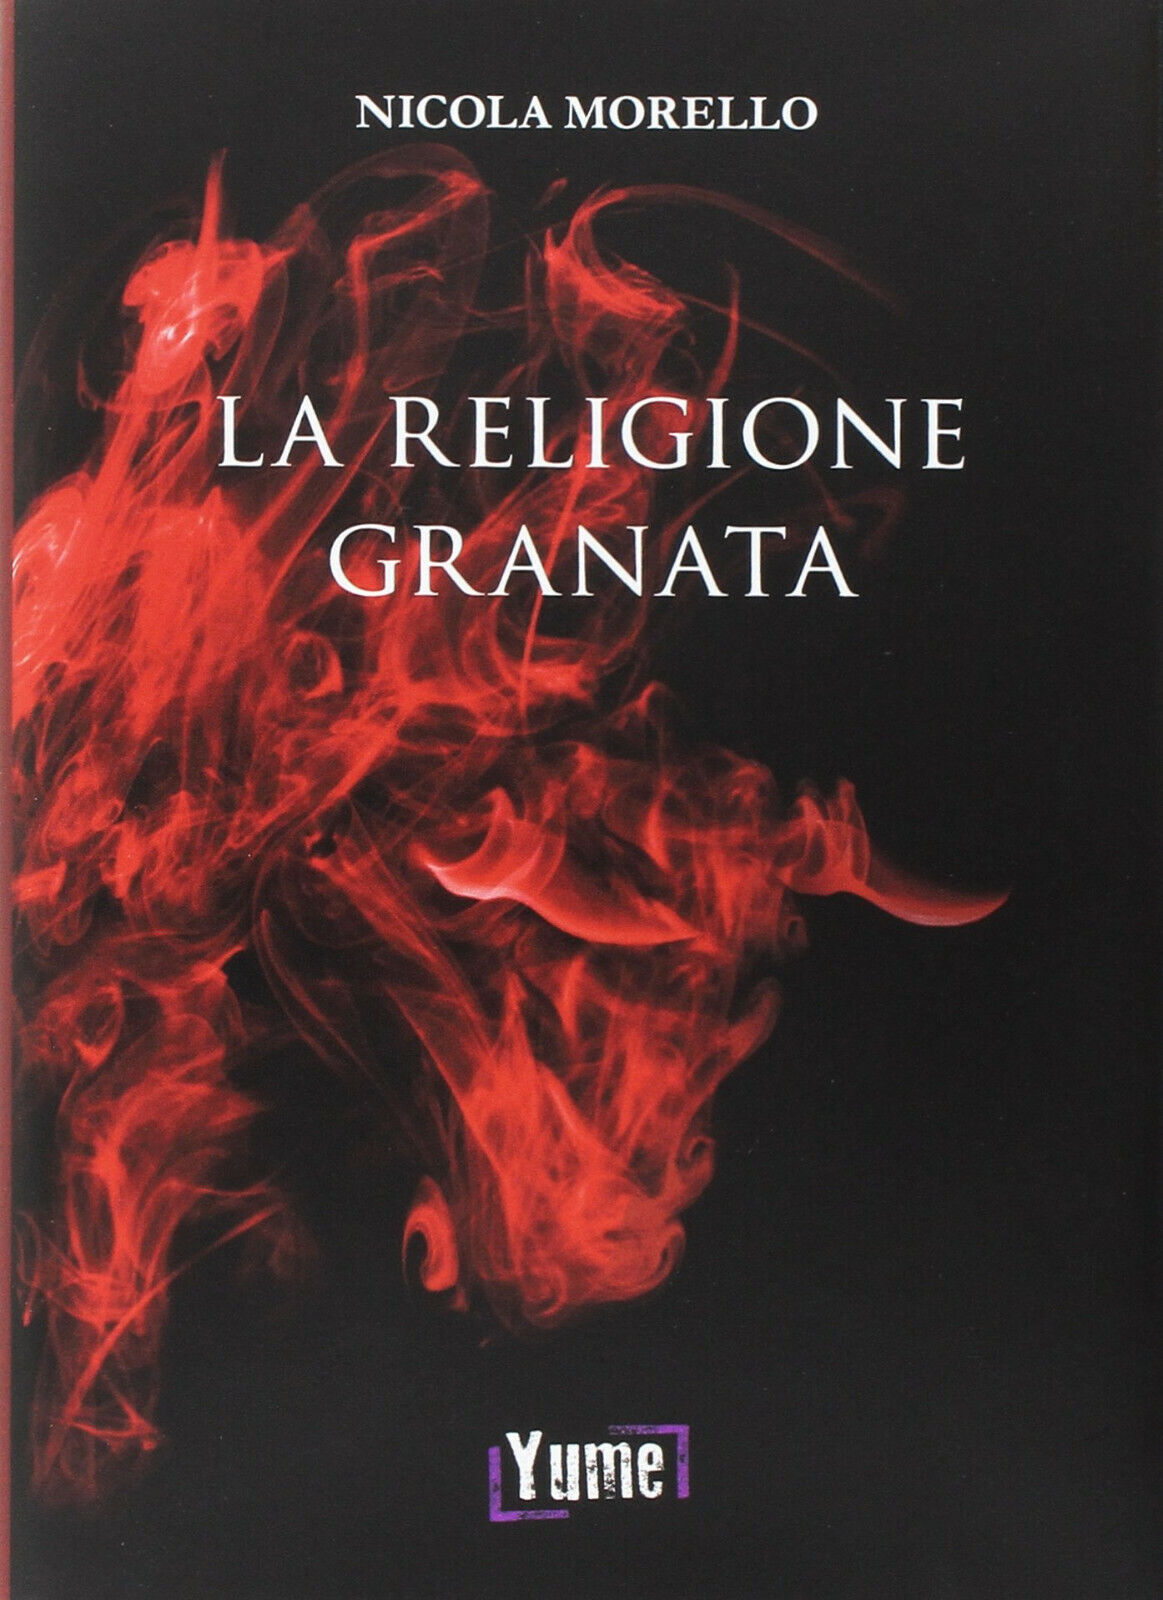 La religione granata - Nicola Morello - Yume, 2017